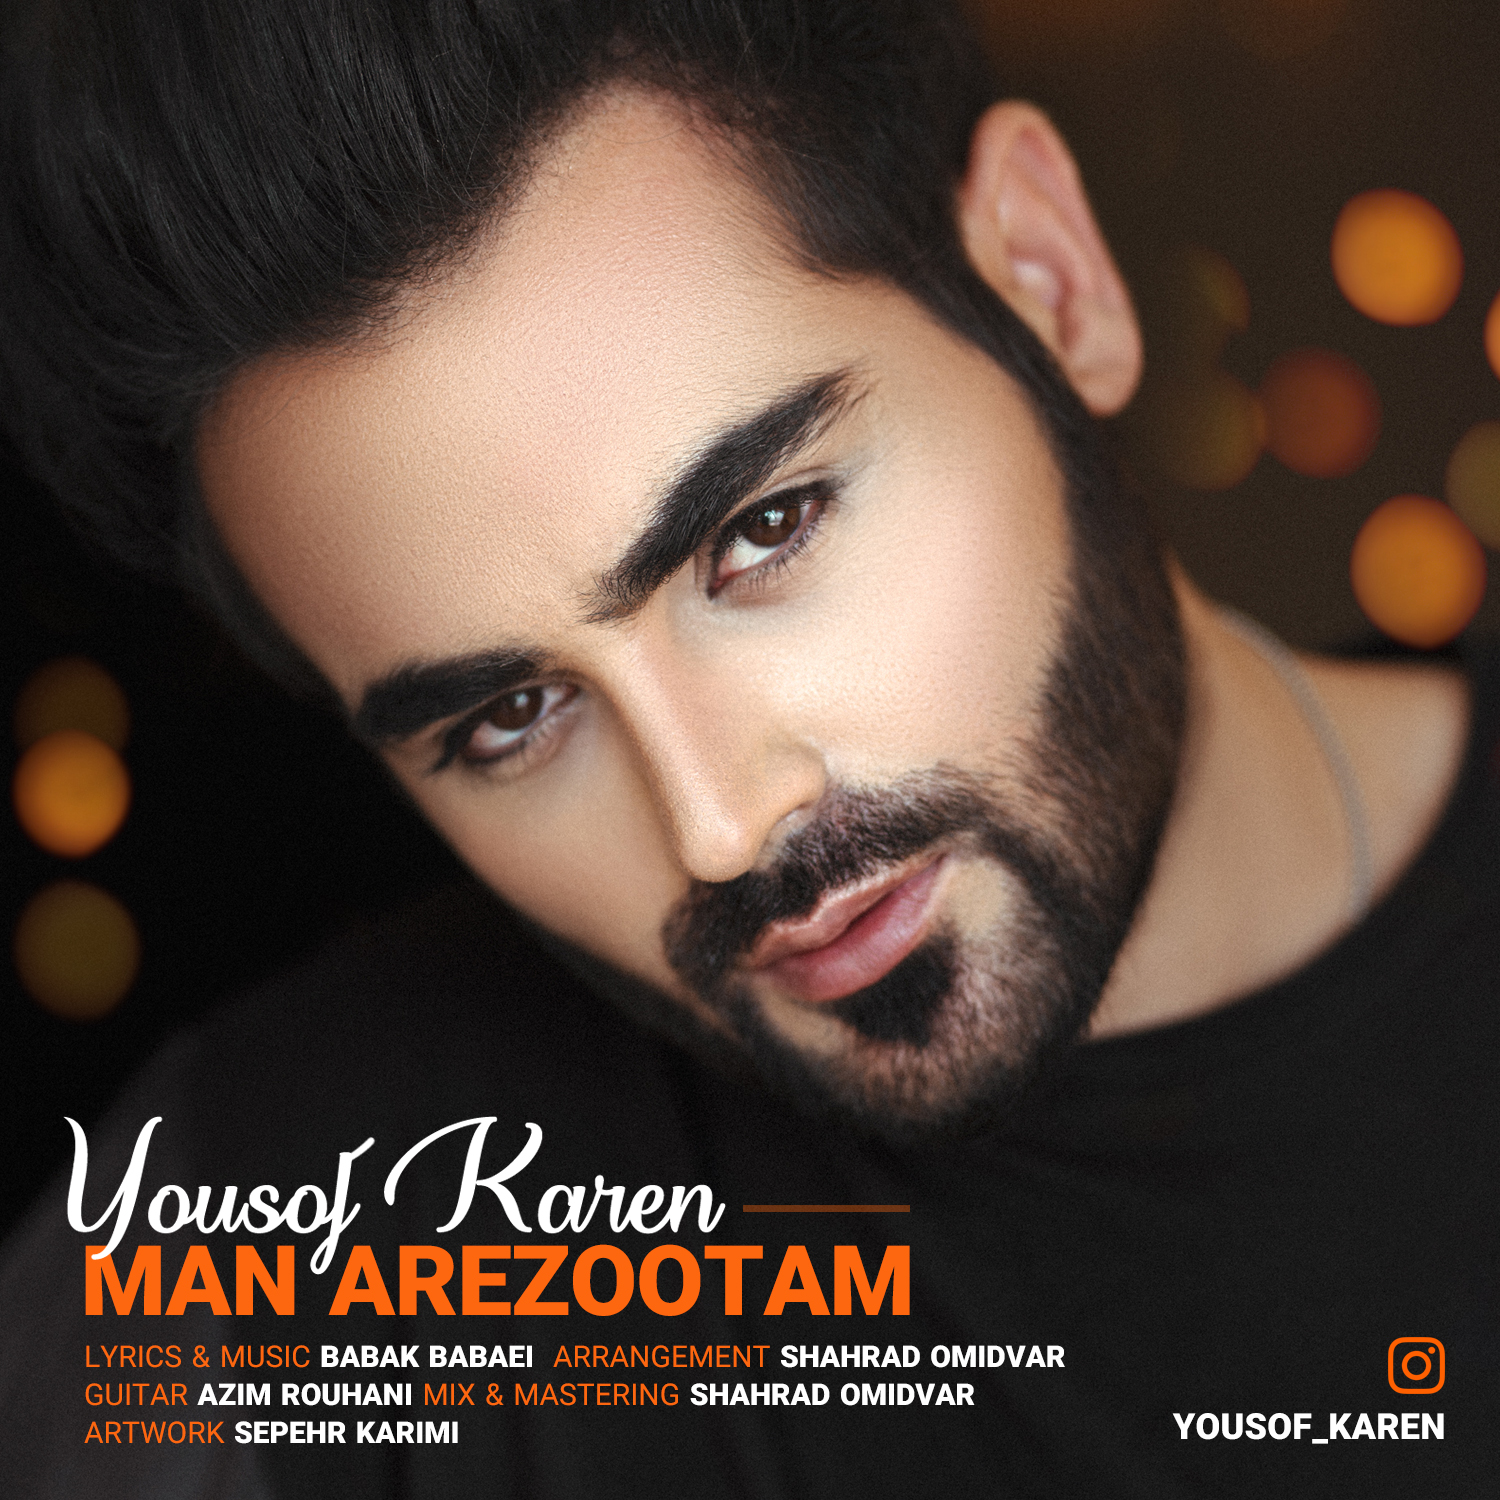 Yousof Karen – Man Arezootam